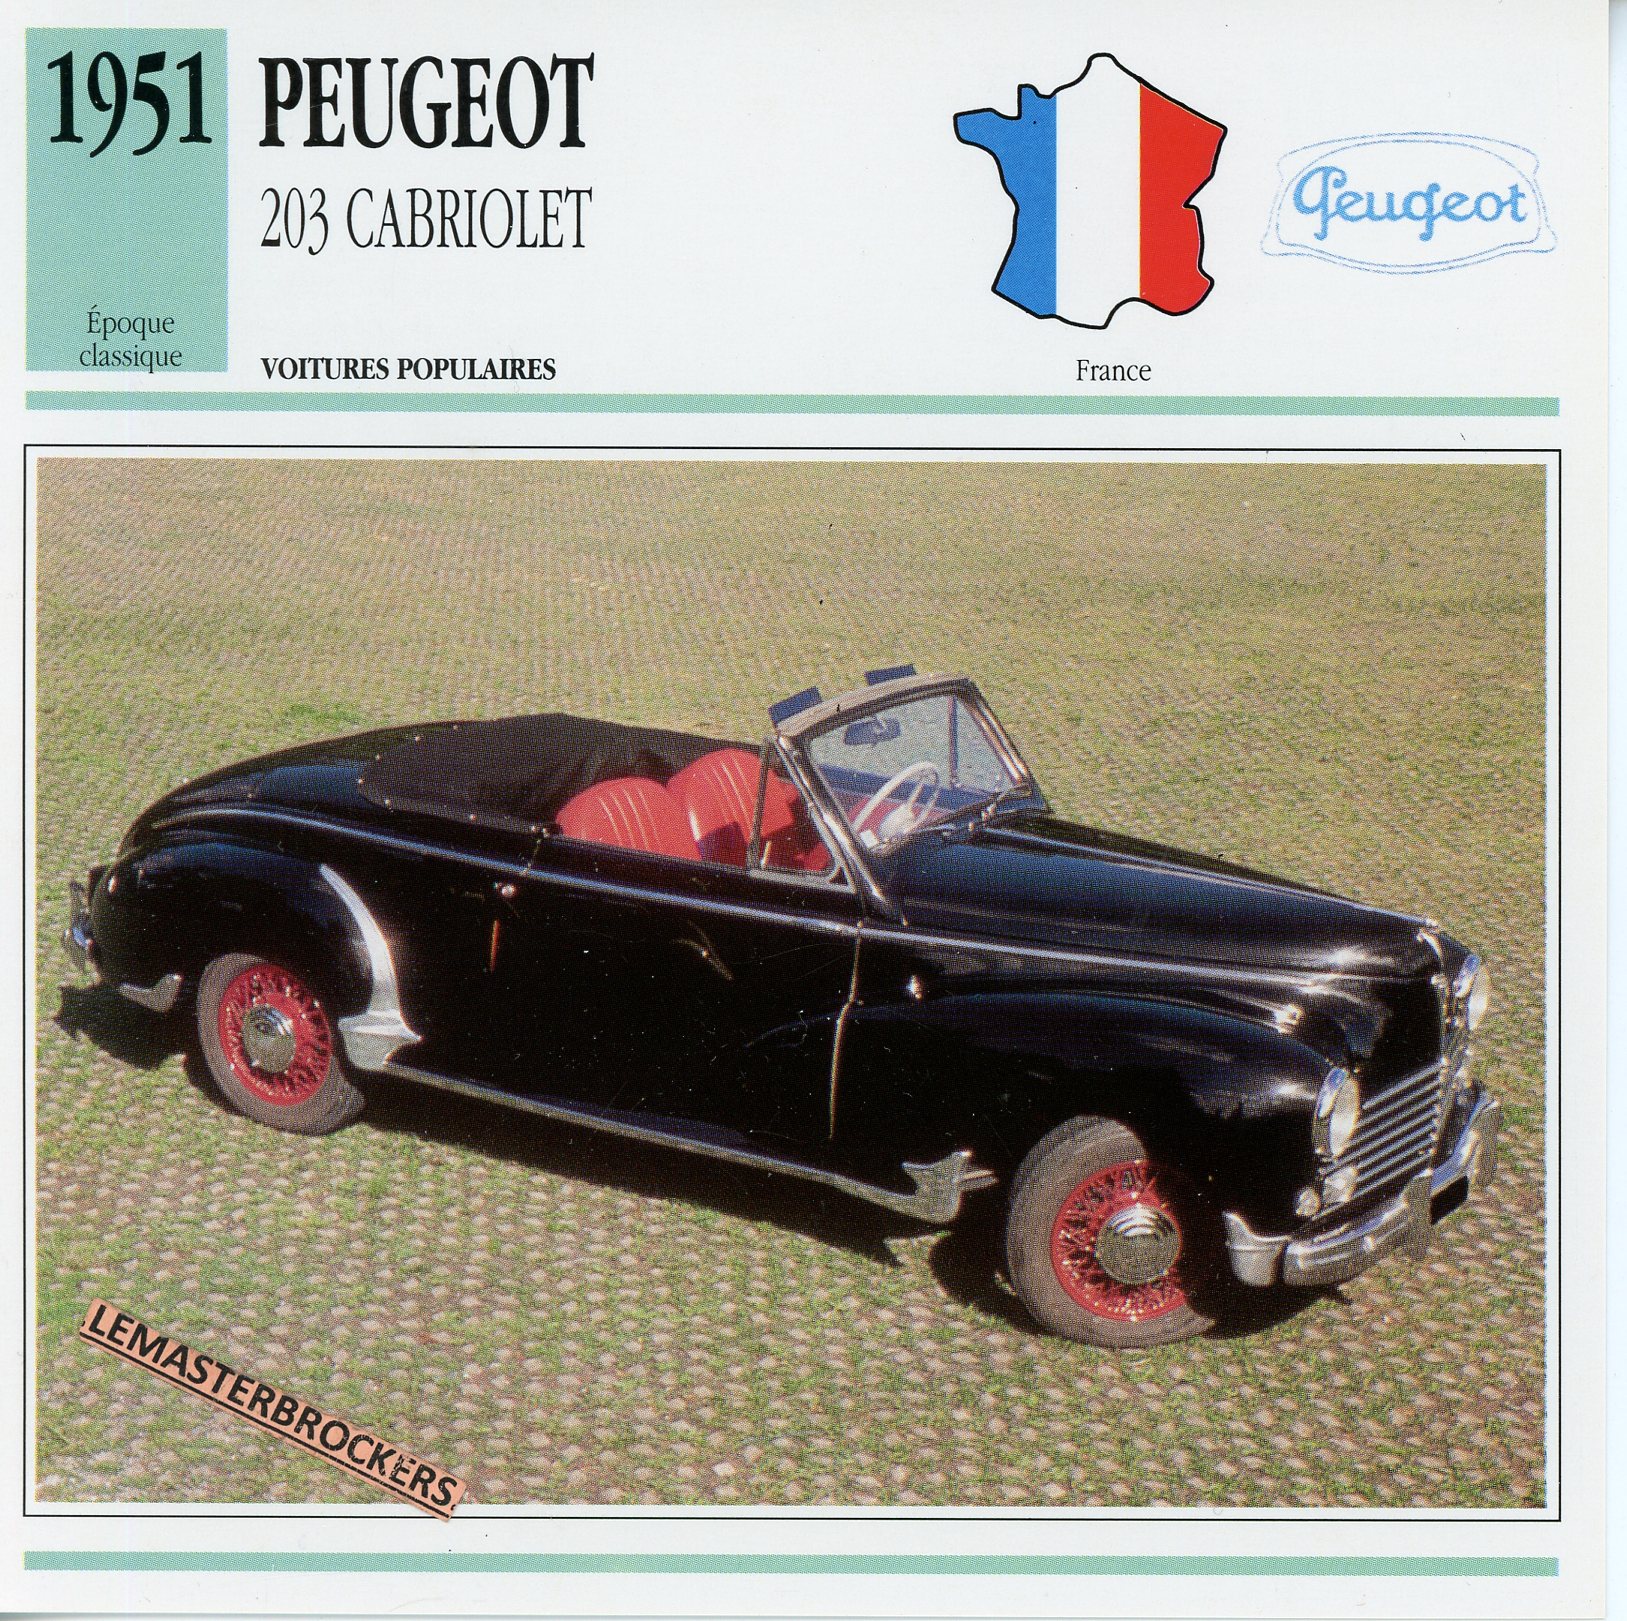 PEUGEOT-203-CABRIOLET-1951-FICHE-AUTO-ATLAS-LEMASTERBROCKERS